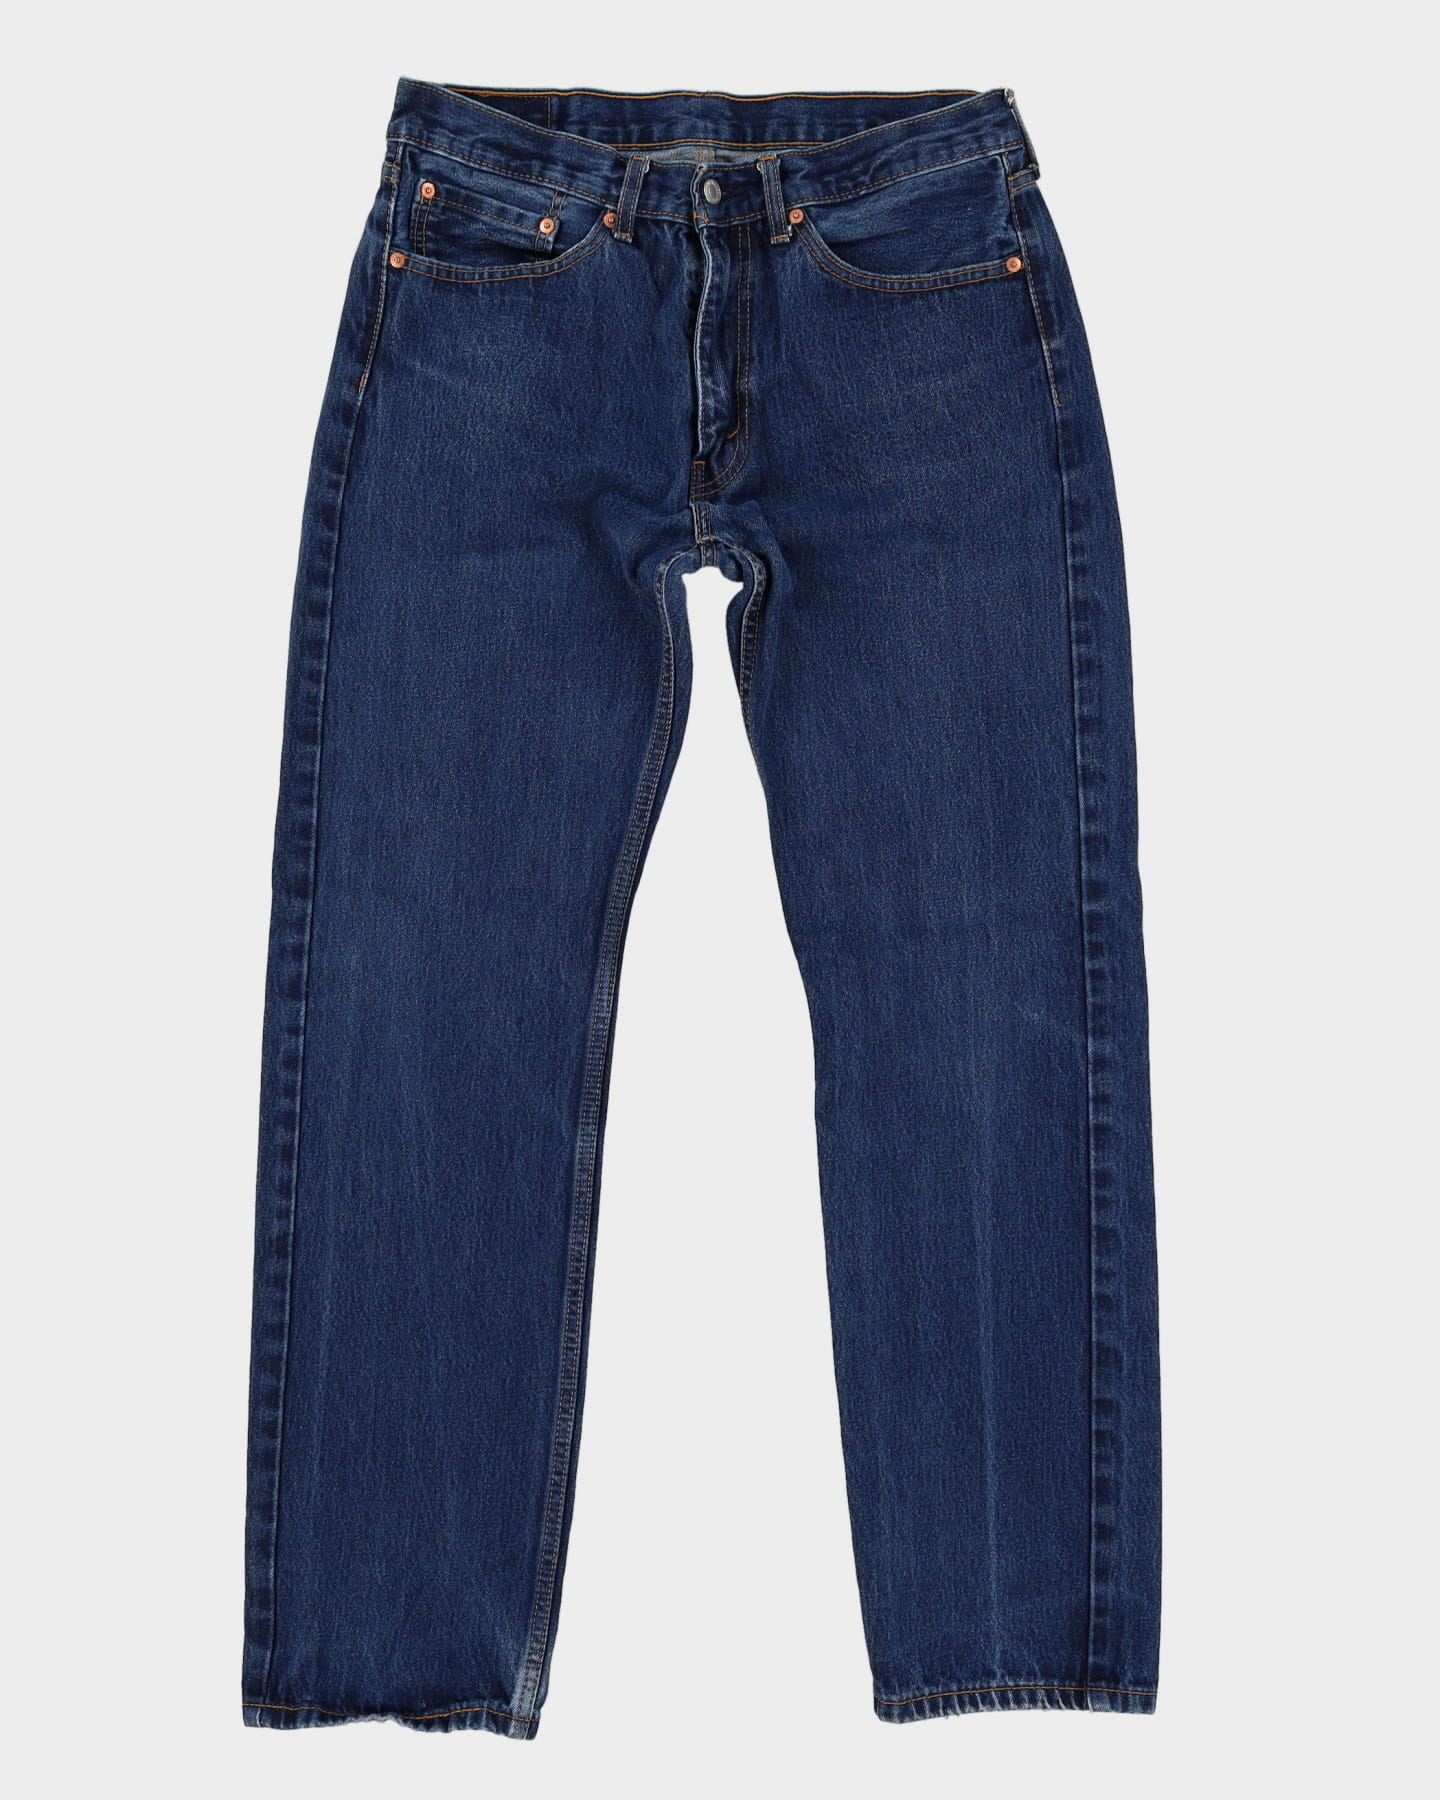 Levi's 505 Blue Jeans - W34 L32